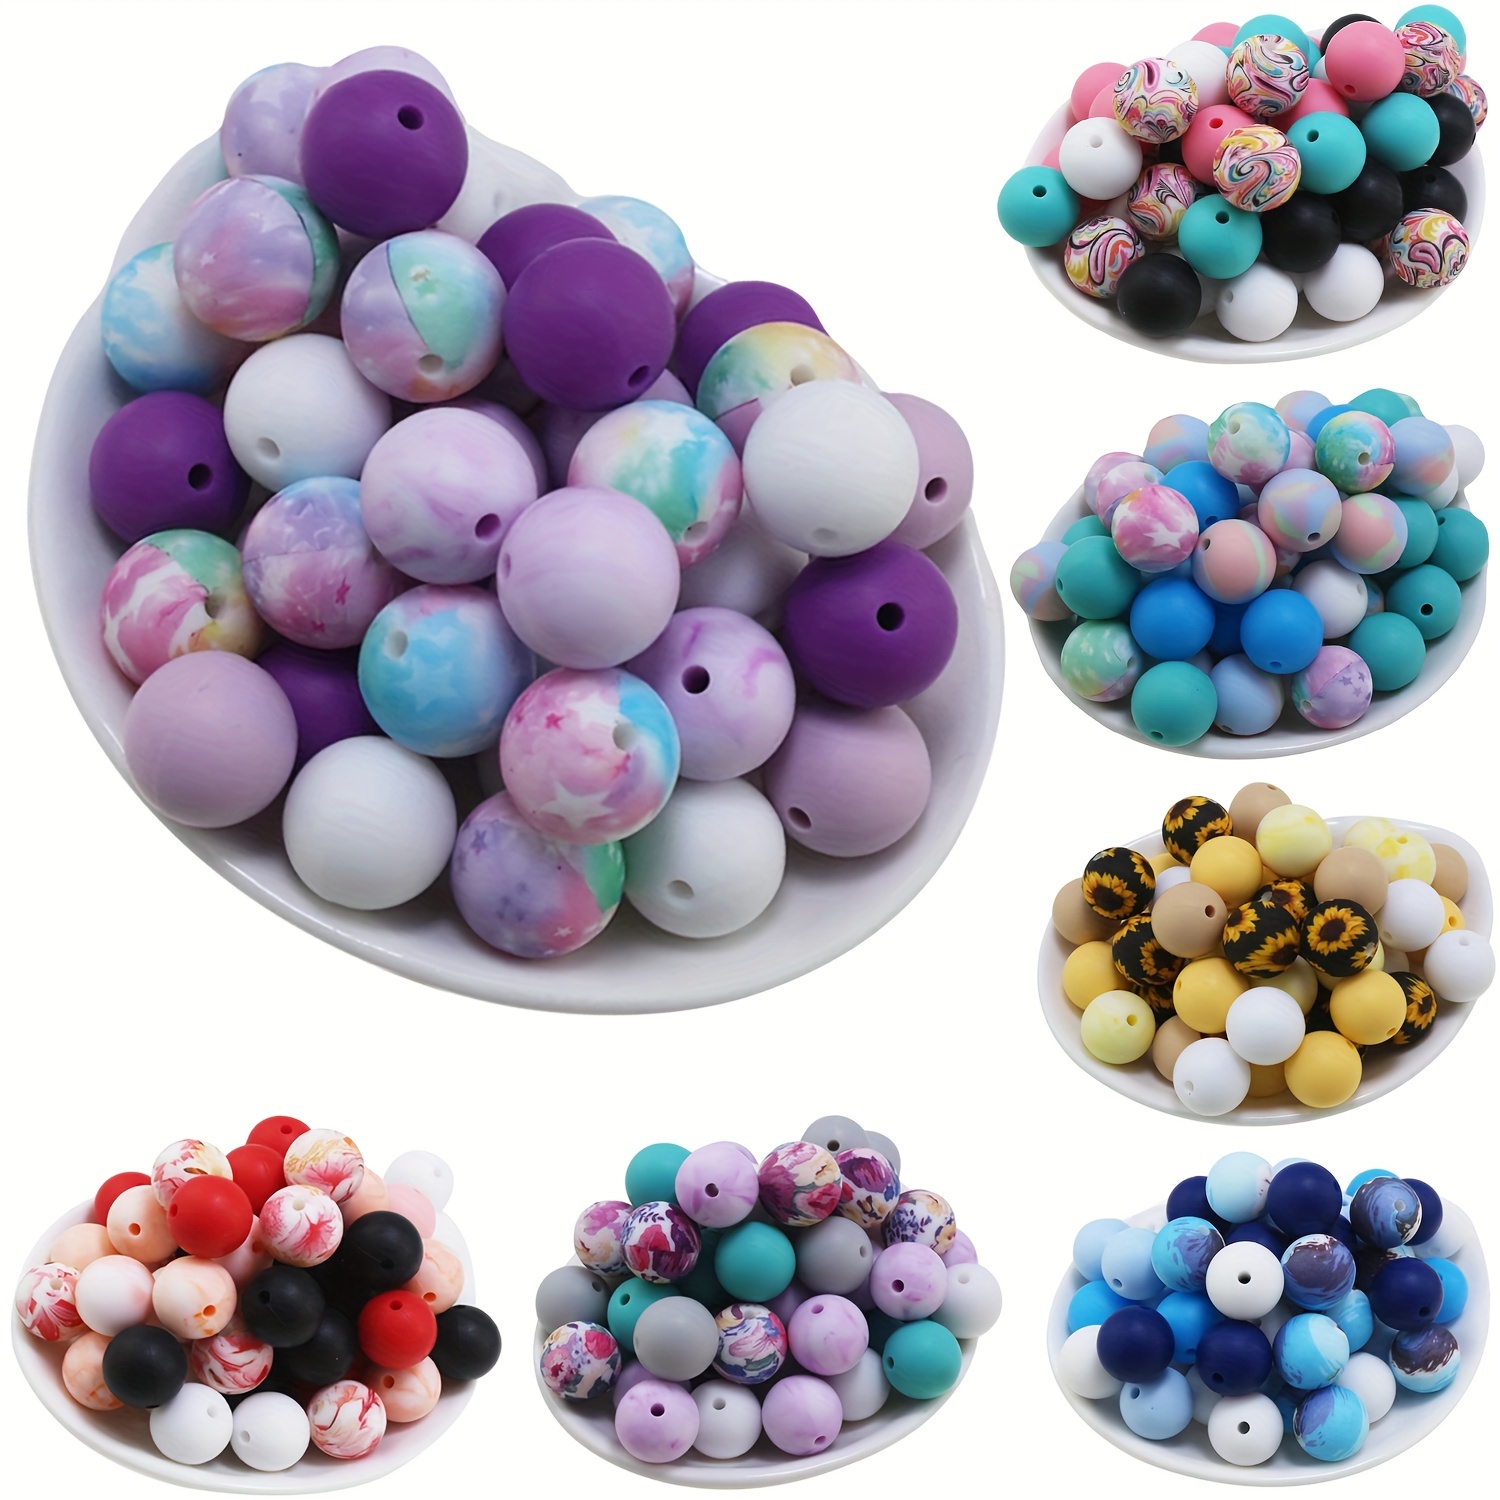 

Total 32/64pcs, Including 28pcs 12mm Solid Color Silicone Round Beads + 4pcs 15mm Watermark Beads, 56pcs 12mm Solid Color Silicone Round Beads + 8pcs 15mm Watermark Beads